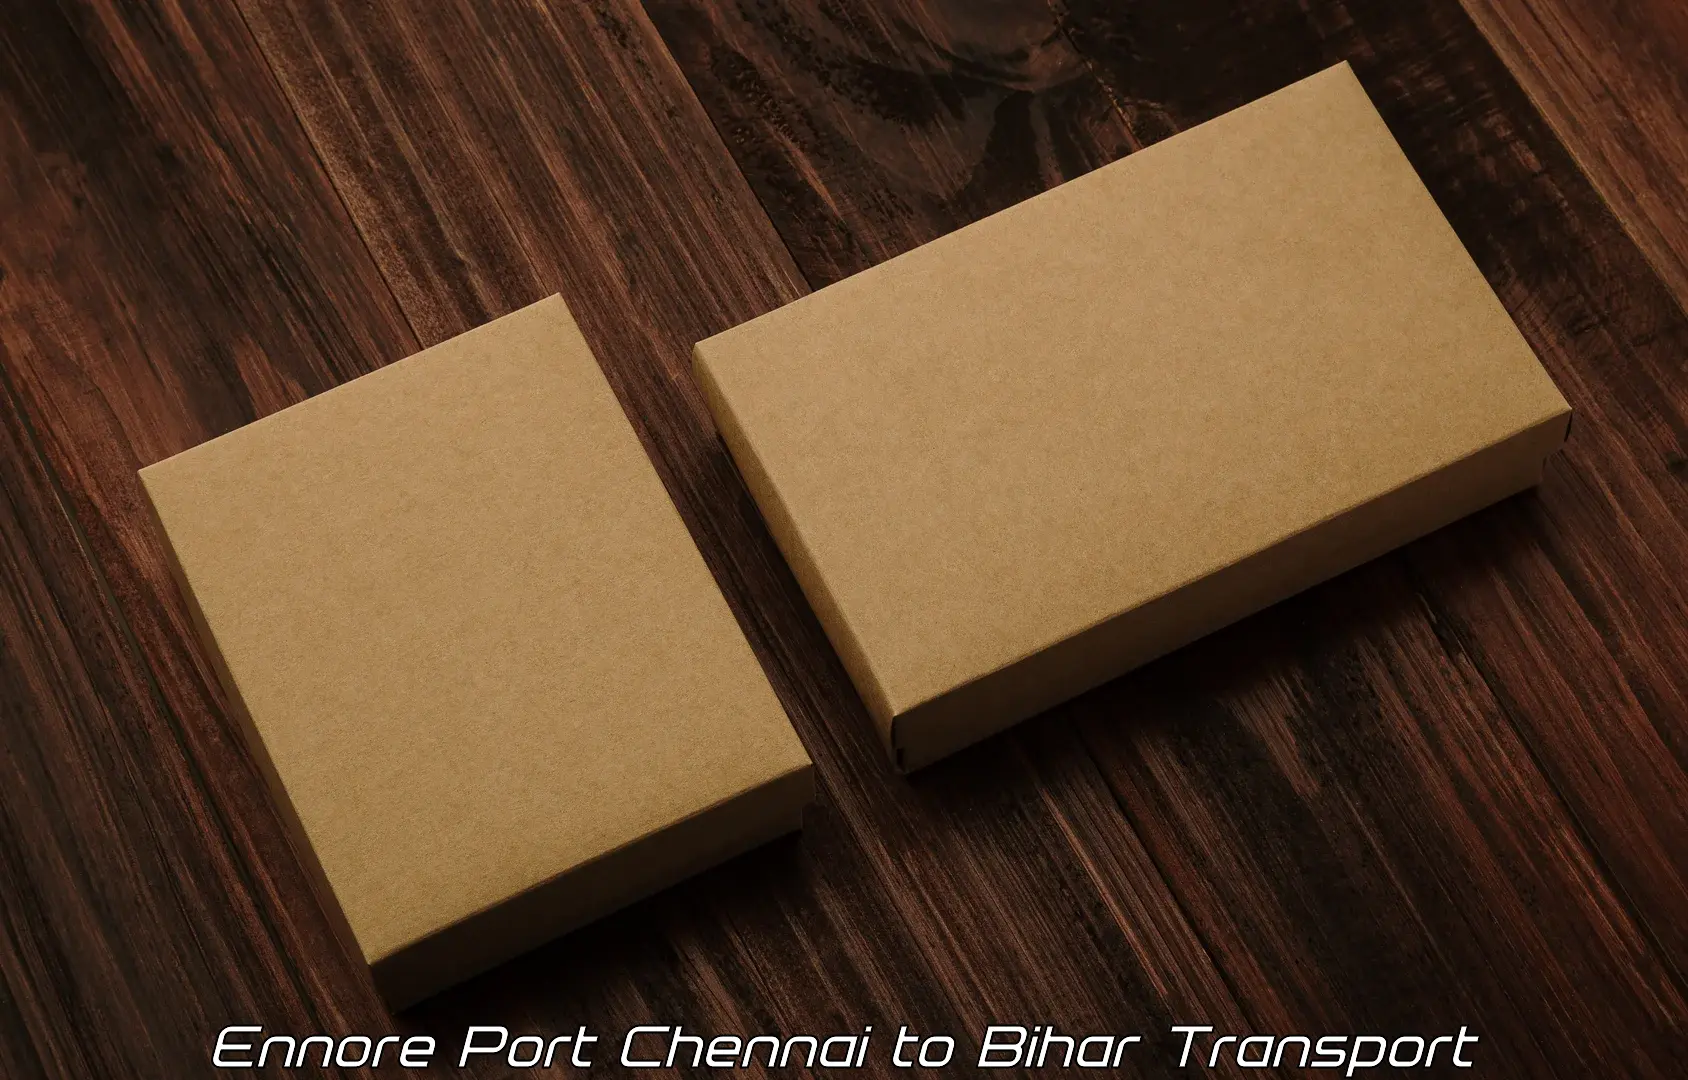 Truck transport companies in India Ennore Port Chennai to Chandi Nalanda